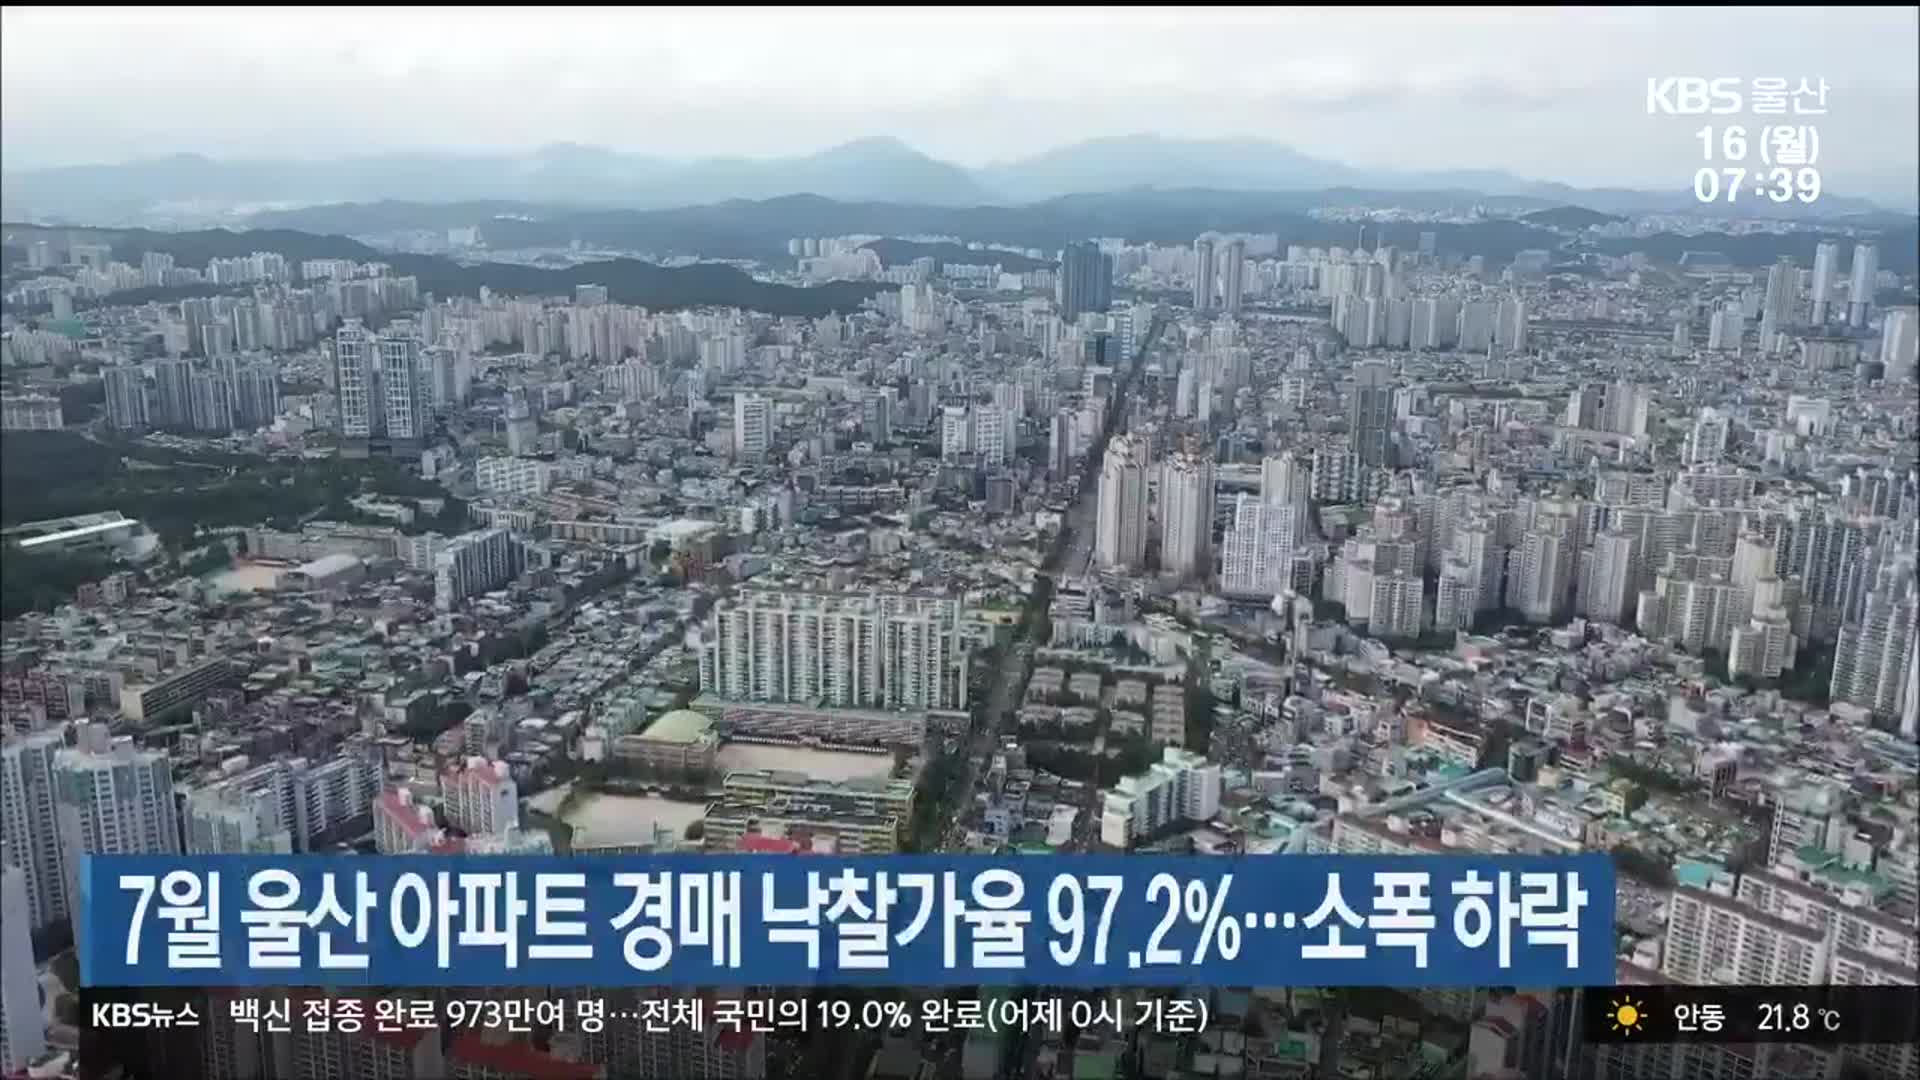 7월 울산 아파트 경매 낙찰가율 97.2%…소폭 하락